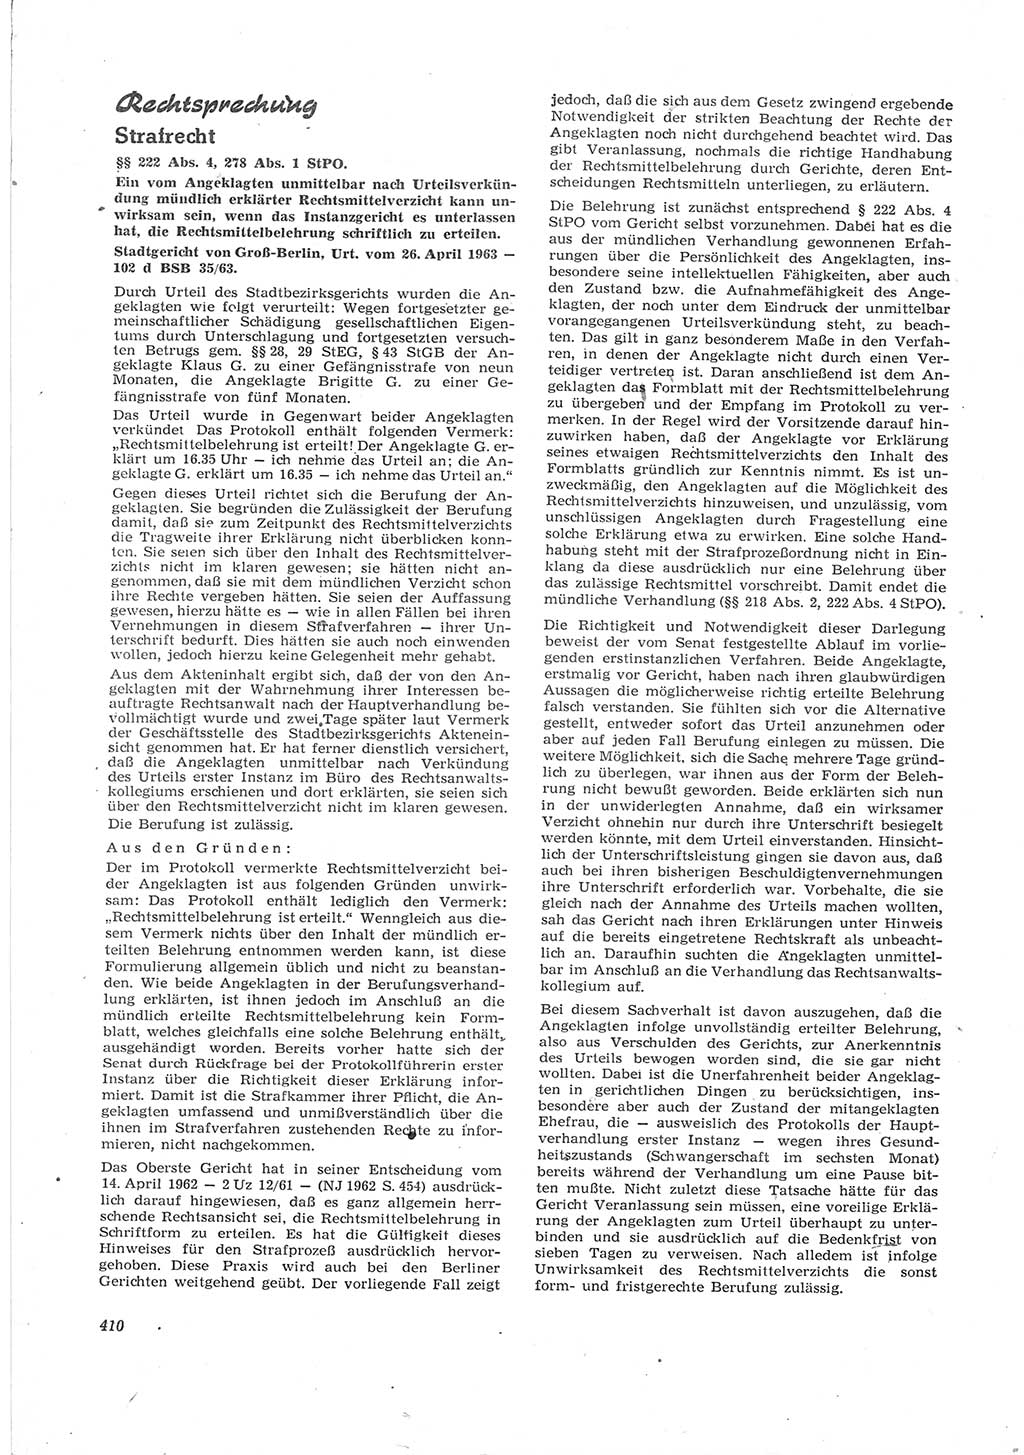 Neue Justiz (NJ), Zeitschrift für Recht und Rechtswissenschaft [Deutsche Demokratische Republik (DDR)], 17. Jahrgang 1963, Seite 410 (NJ DDR 1963, S. 410)